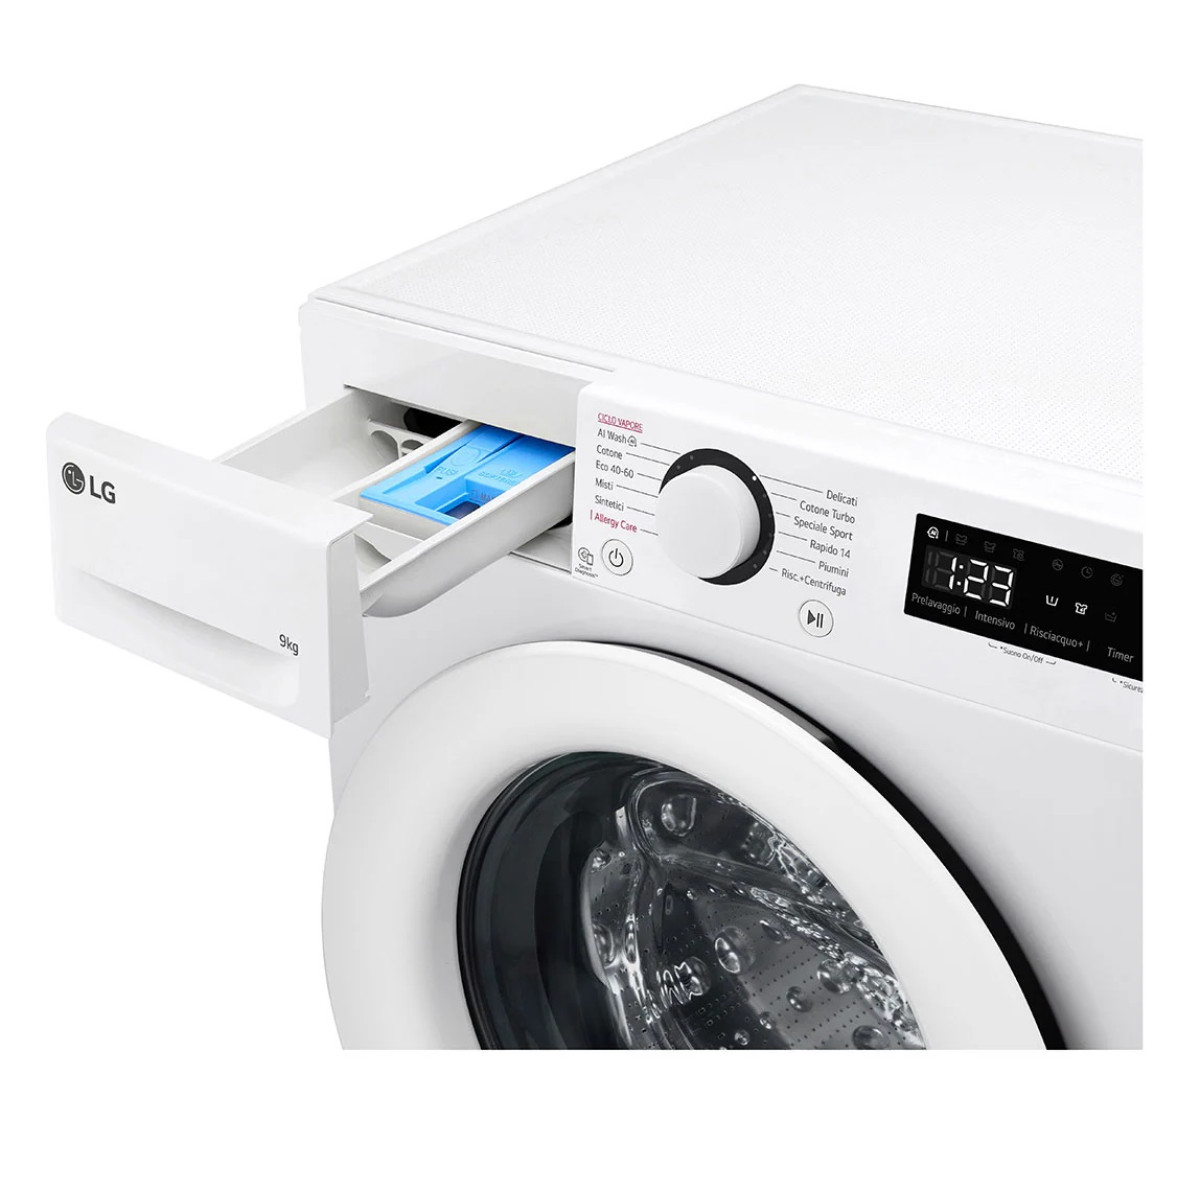 Πλυντήριο Ρούχων LG F4R3009NSWW 9kg 1400Rpm  Πλυντήρια ρούχων